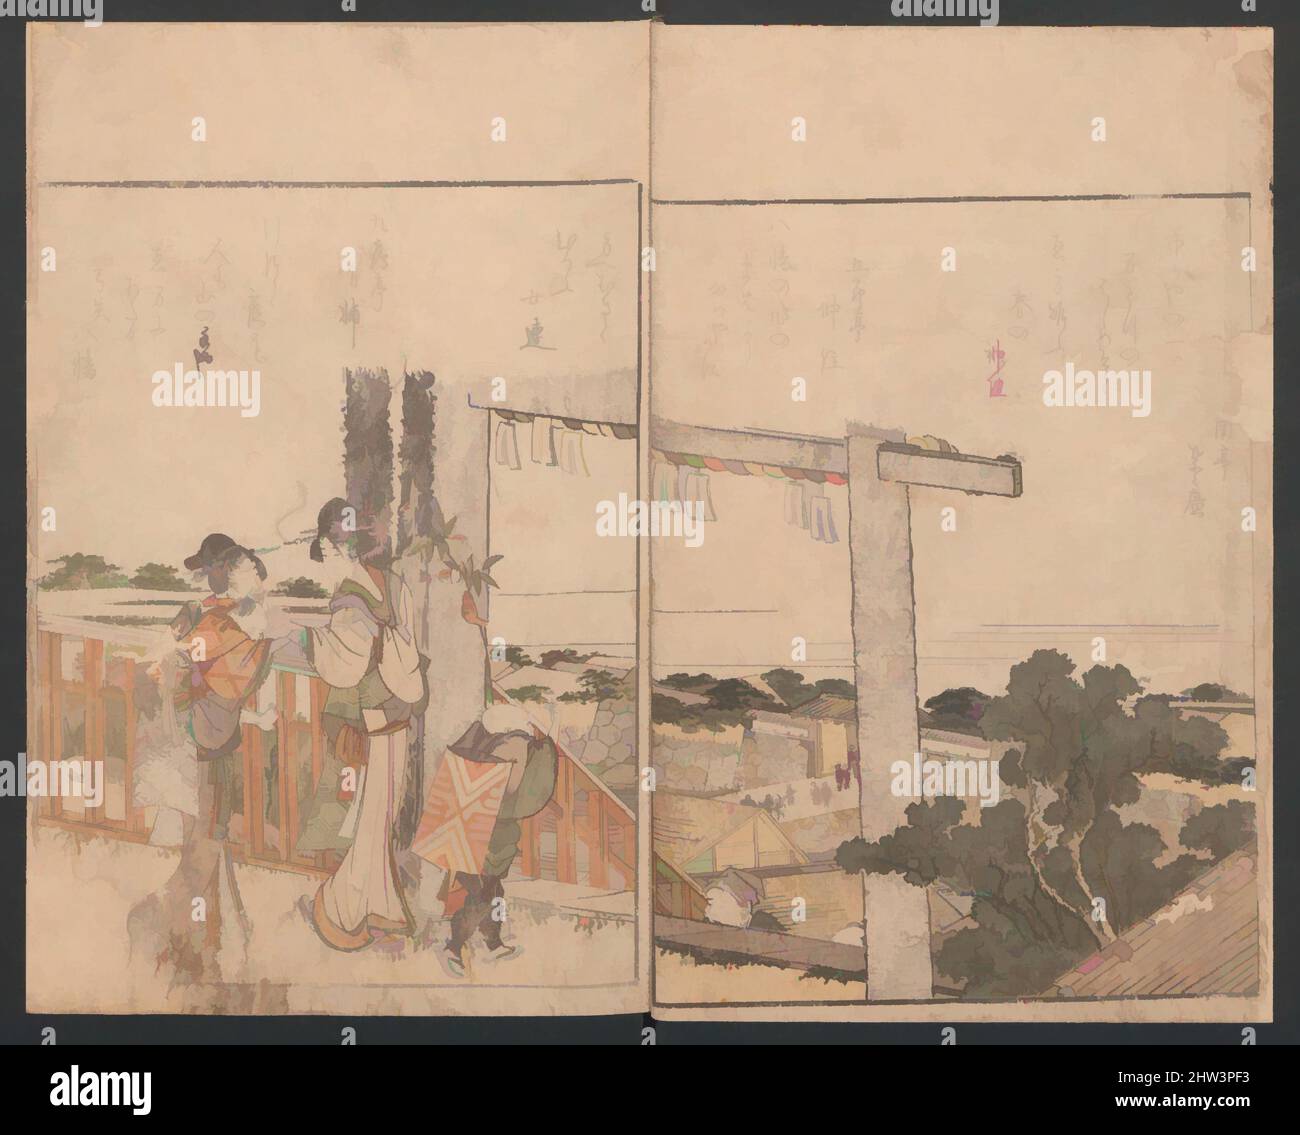 Kunst inspiriert durch das illustrierte Buch humorvoller Gedichte „Berg auf Berg“, Edo-Zeit (1615–1868), ca. 1803, Japan, drei Bände; Tinte und Farbe auf Papier, jeweils 10 × 6 3/4 × 1/4 Zoll (25,4 × 17,1 × 0,6 cm), Illustrierte Bücher, Katsushika Hokusai (Japanisch, Tokio (Edo) 1760–1849 Tokio (Edo, Klassische Werke, die von Artotop mit einem Schuss Moderne modernisiert wurden. Formen, Farbe und Wert, auffällige visuelle Wirkung auf Kunst. Emotionen durch Freiheit von Kunstwerken auf zeitgemäße Weise. Eine zeitlose Botschaft, die eine wild kreative neue Richtung verfolgt. Künstler, die sich dem digitalen Medium zuwenden und die Artotop NFT erschaffen Stockfoto